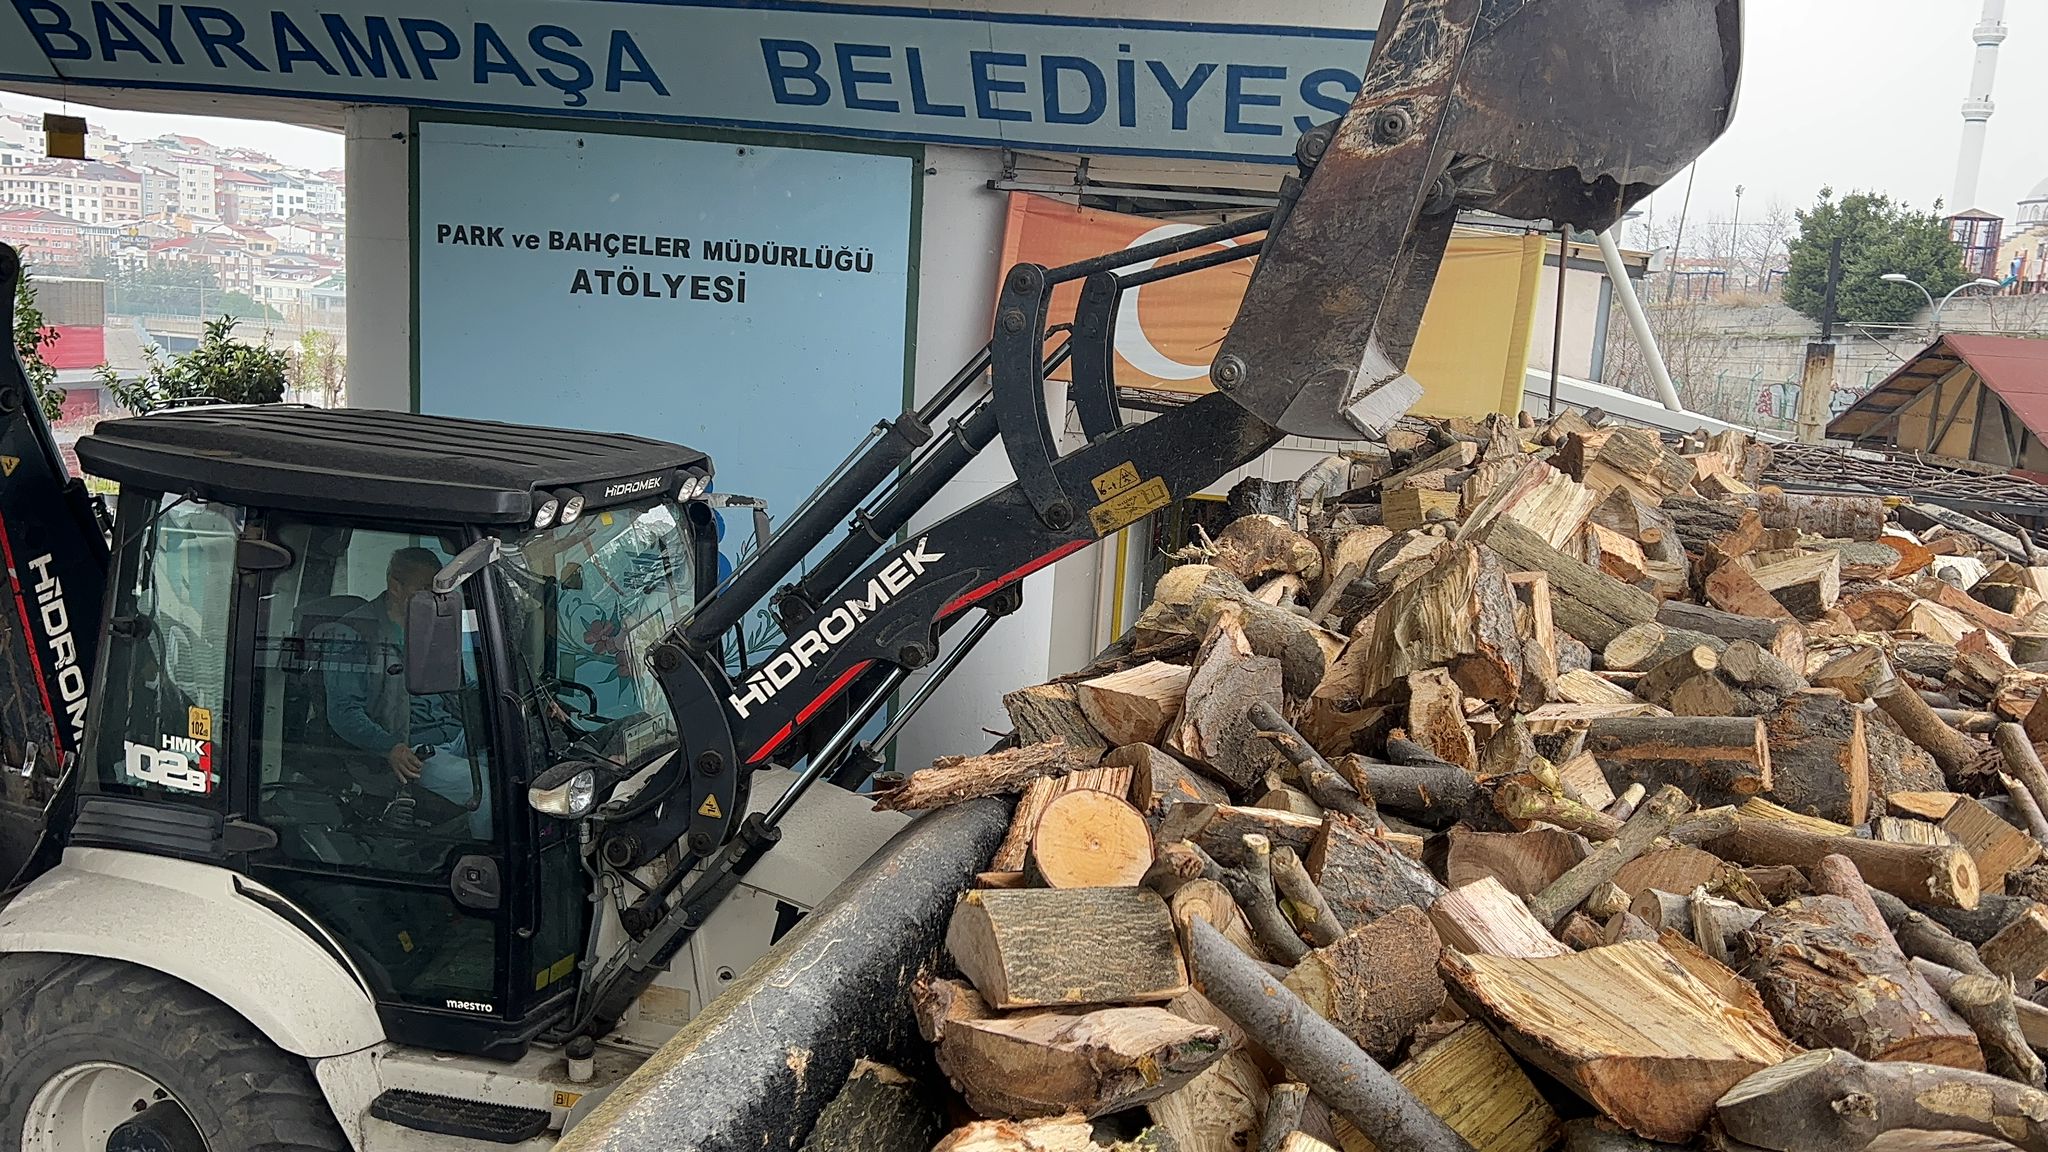 20 ton odun gönderildi